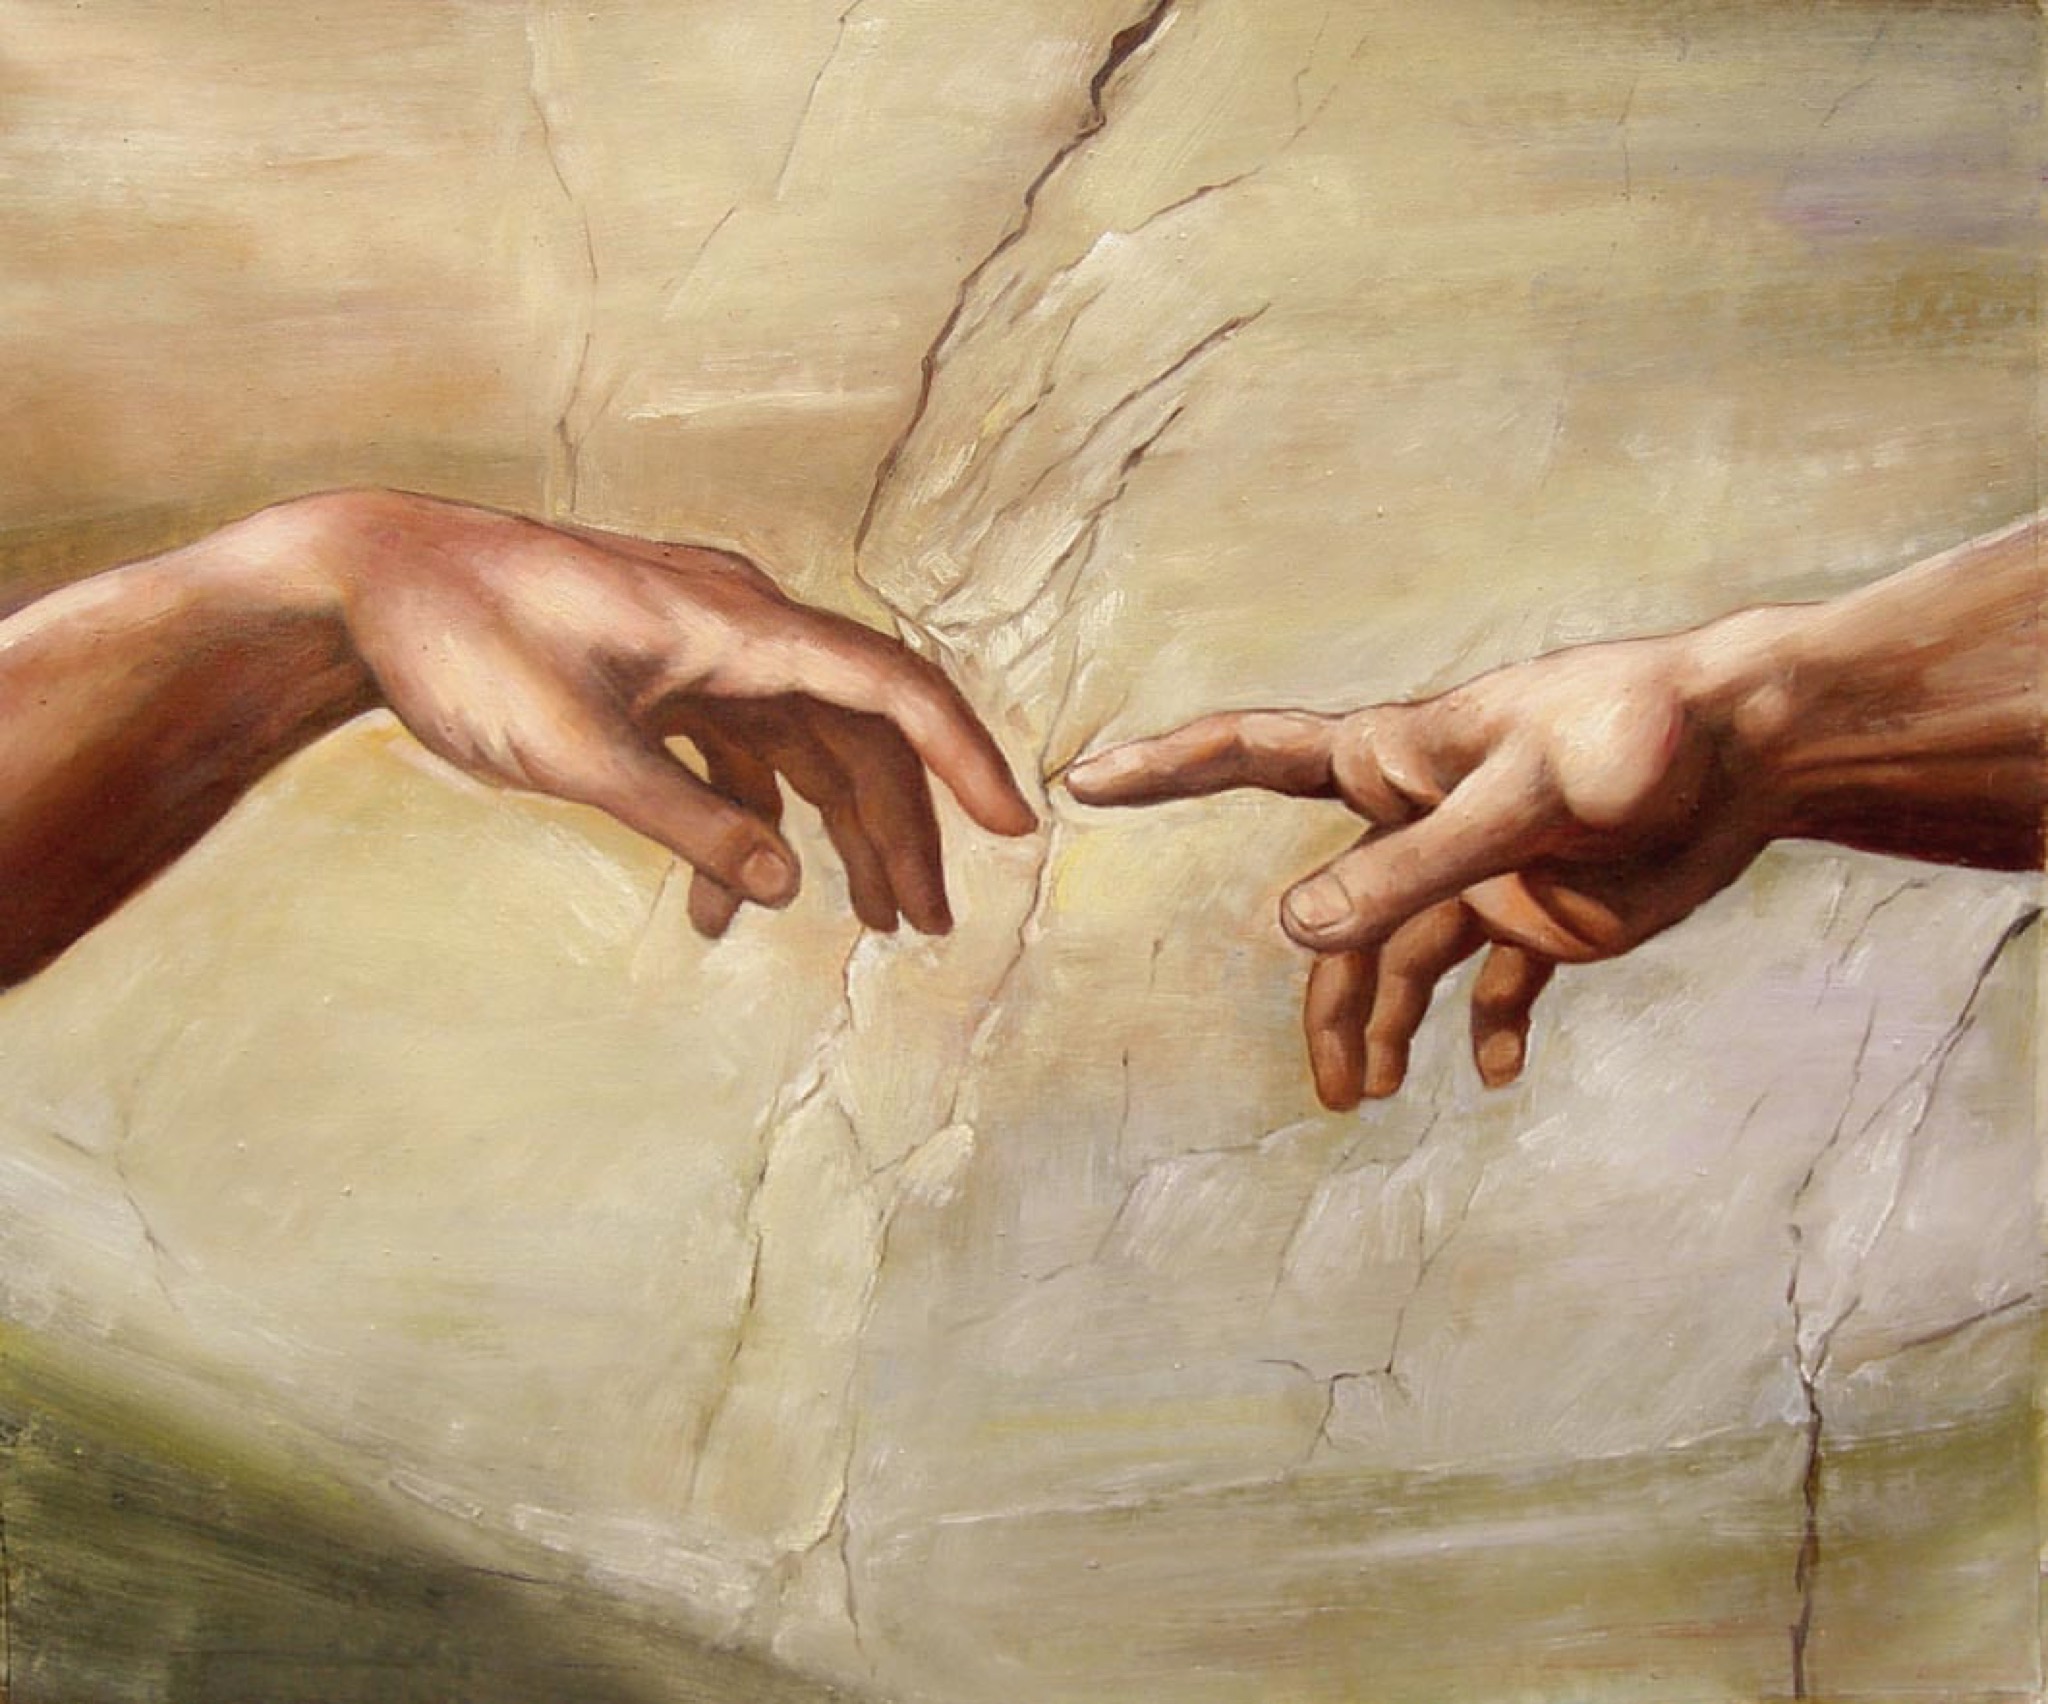 Буда касание. "Сотворение Адама" Микеланджело, 1511. Рука Адама и Бога Микеланджело. Michelangelo Creation of Adam. Сотворение Адама (1512).